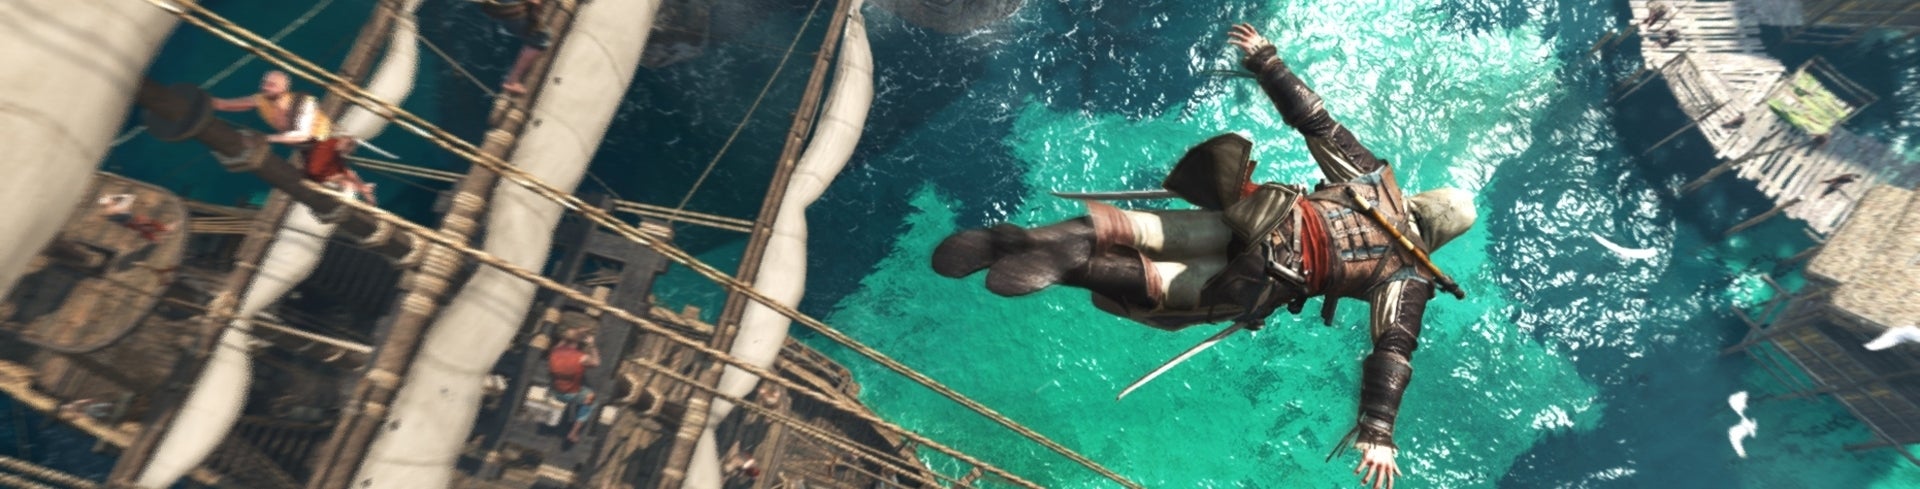 Image for Exkluzivně: Assassins Creed 4: Black Flag vyjde také na PS4 v češtině